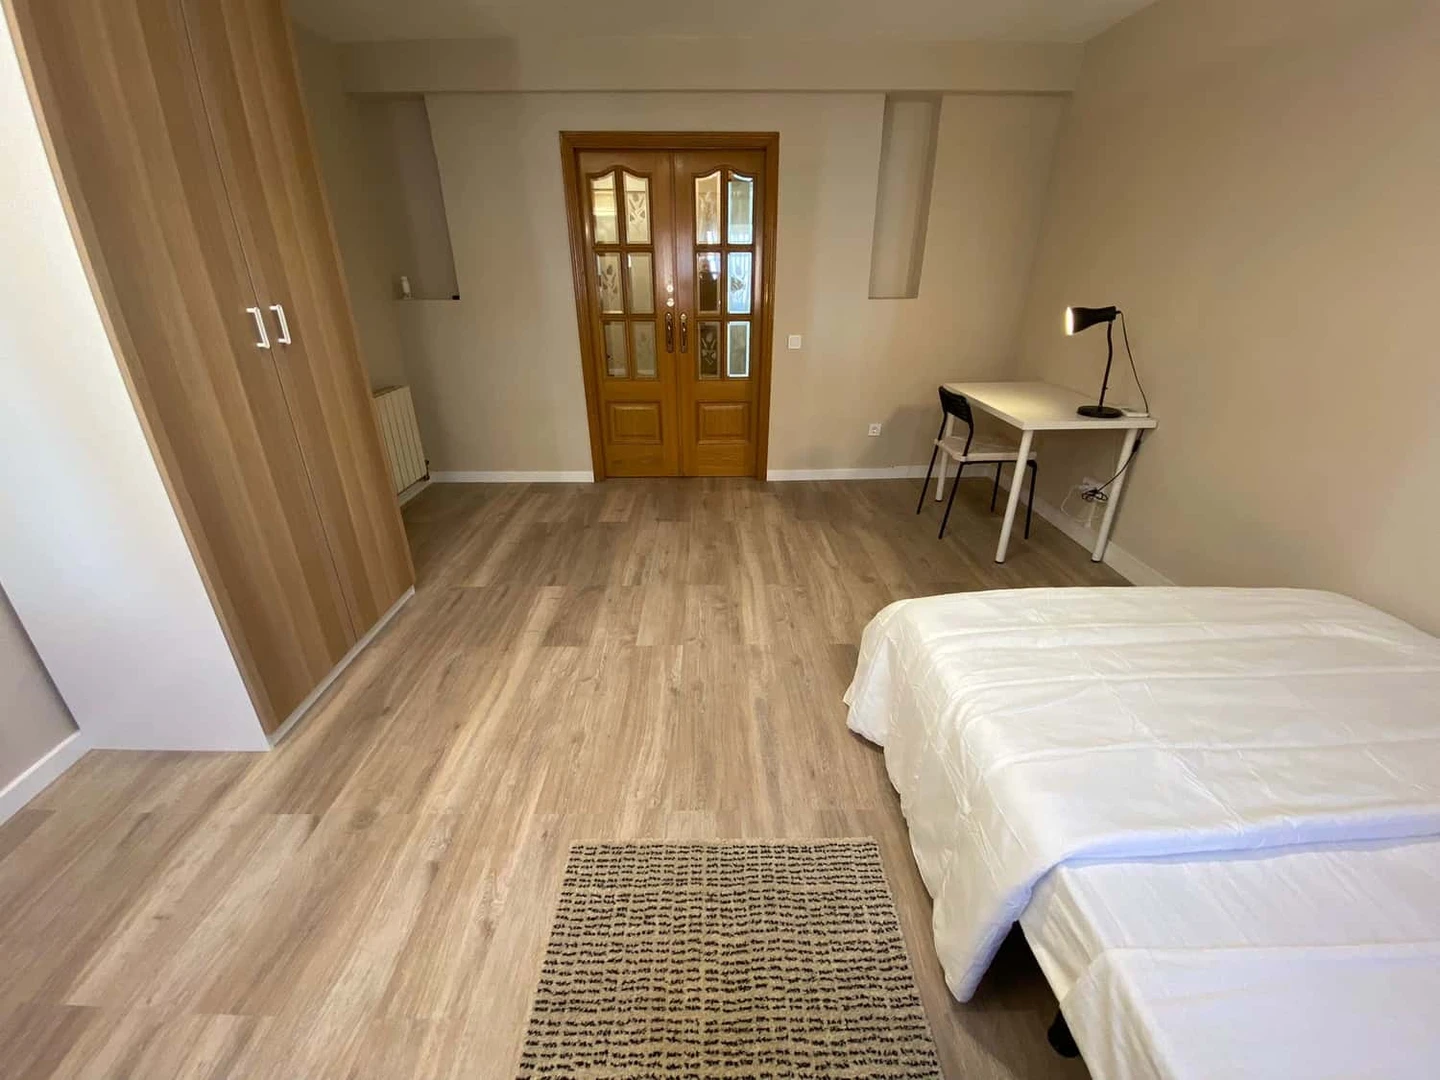 Alquiler de habitación en piso compartido en Fuenlabrada